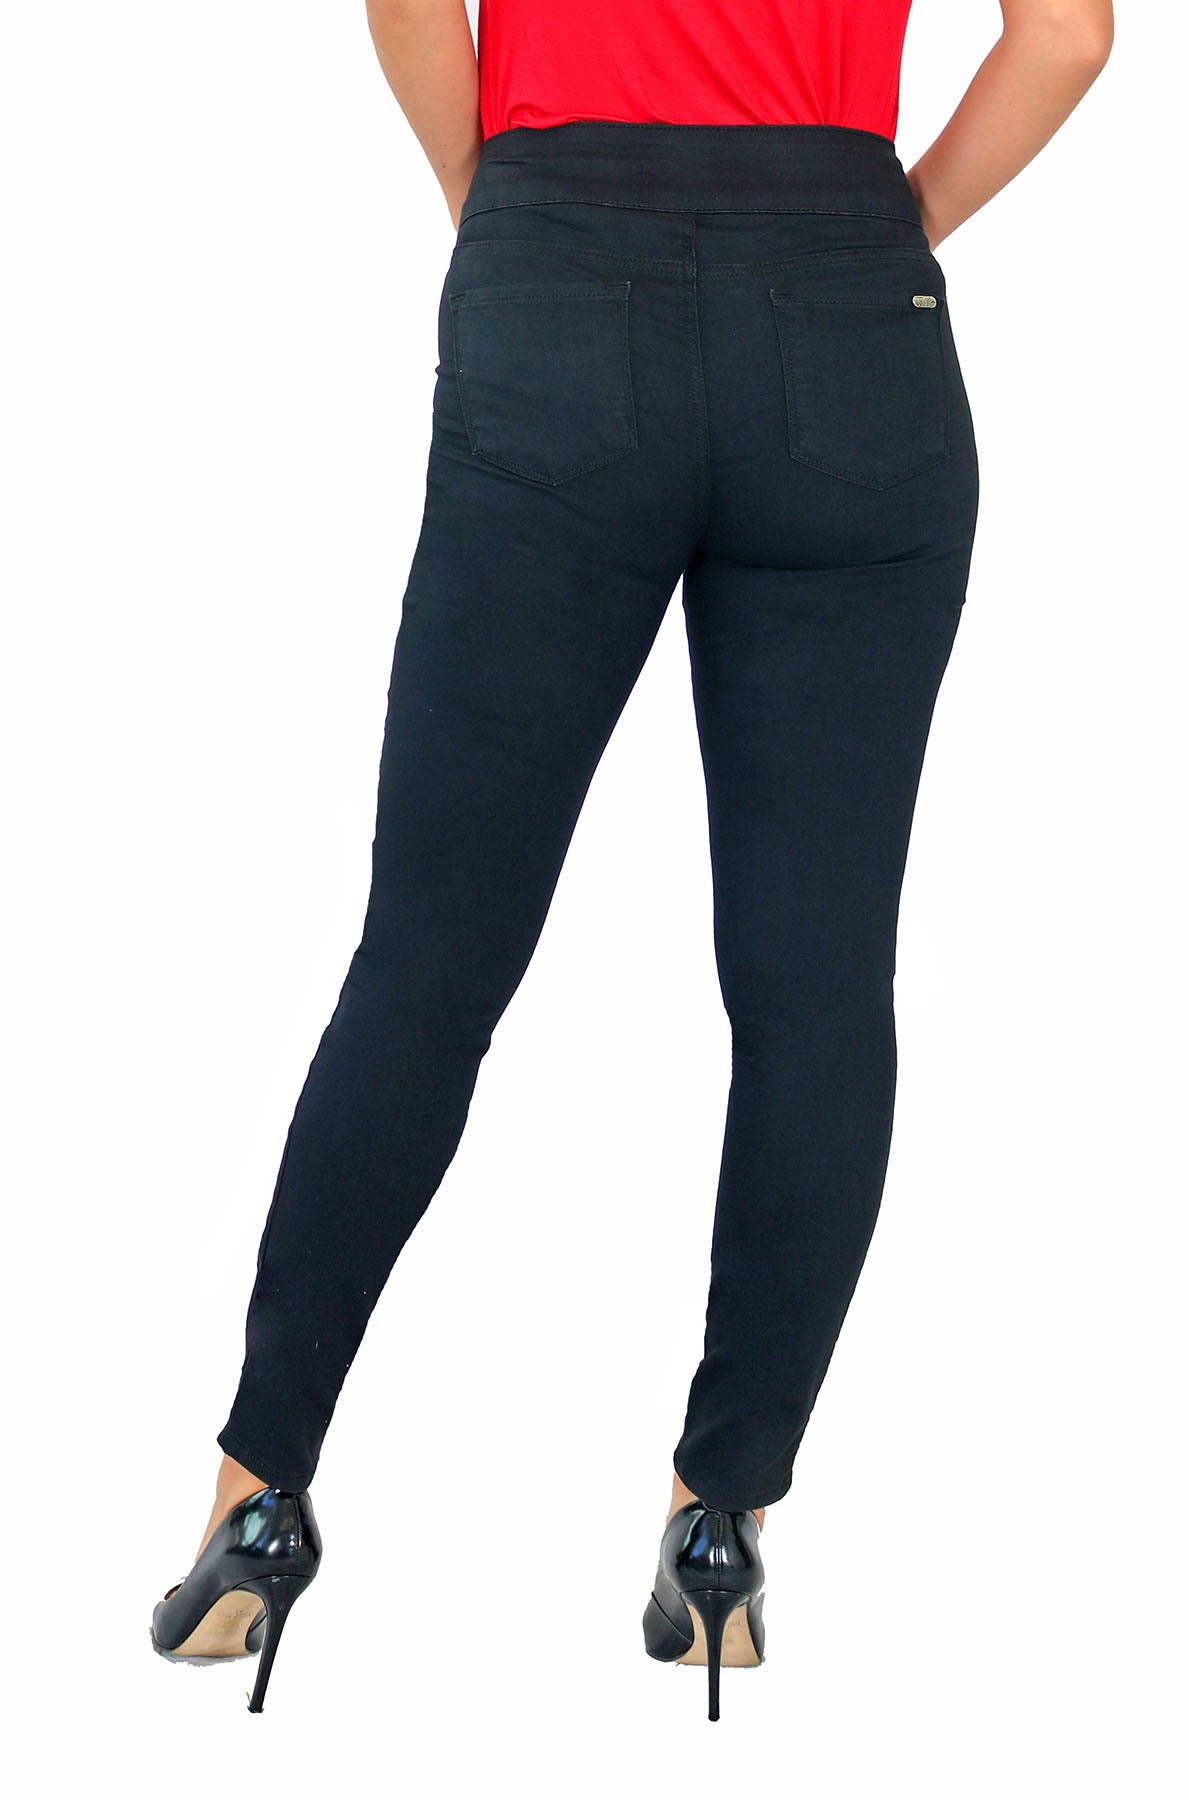 TrueSlim™ Black Satin Twill Skinny Jeggings – TrueSlim Jeans